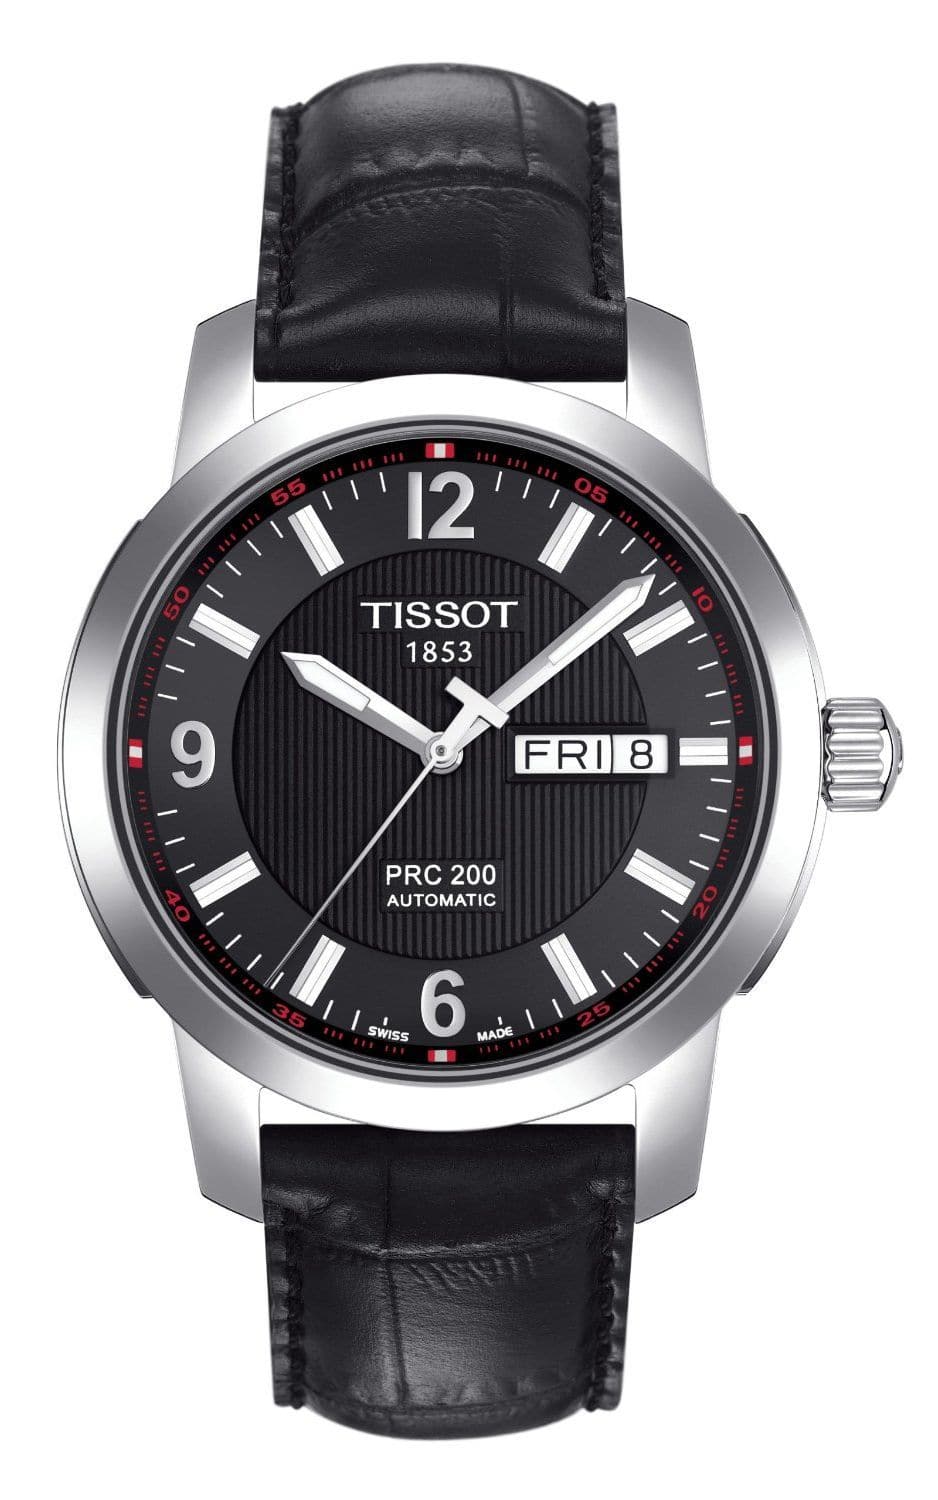 TISSOT T-Sport PRC200 Men's Watch T014.430.16.057.00 - Kamal Watch Company